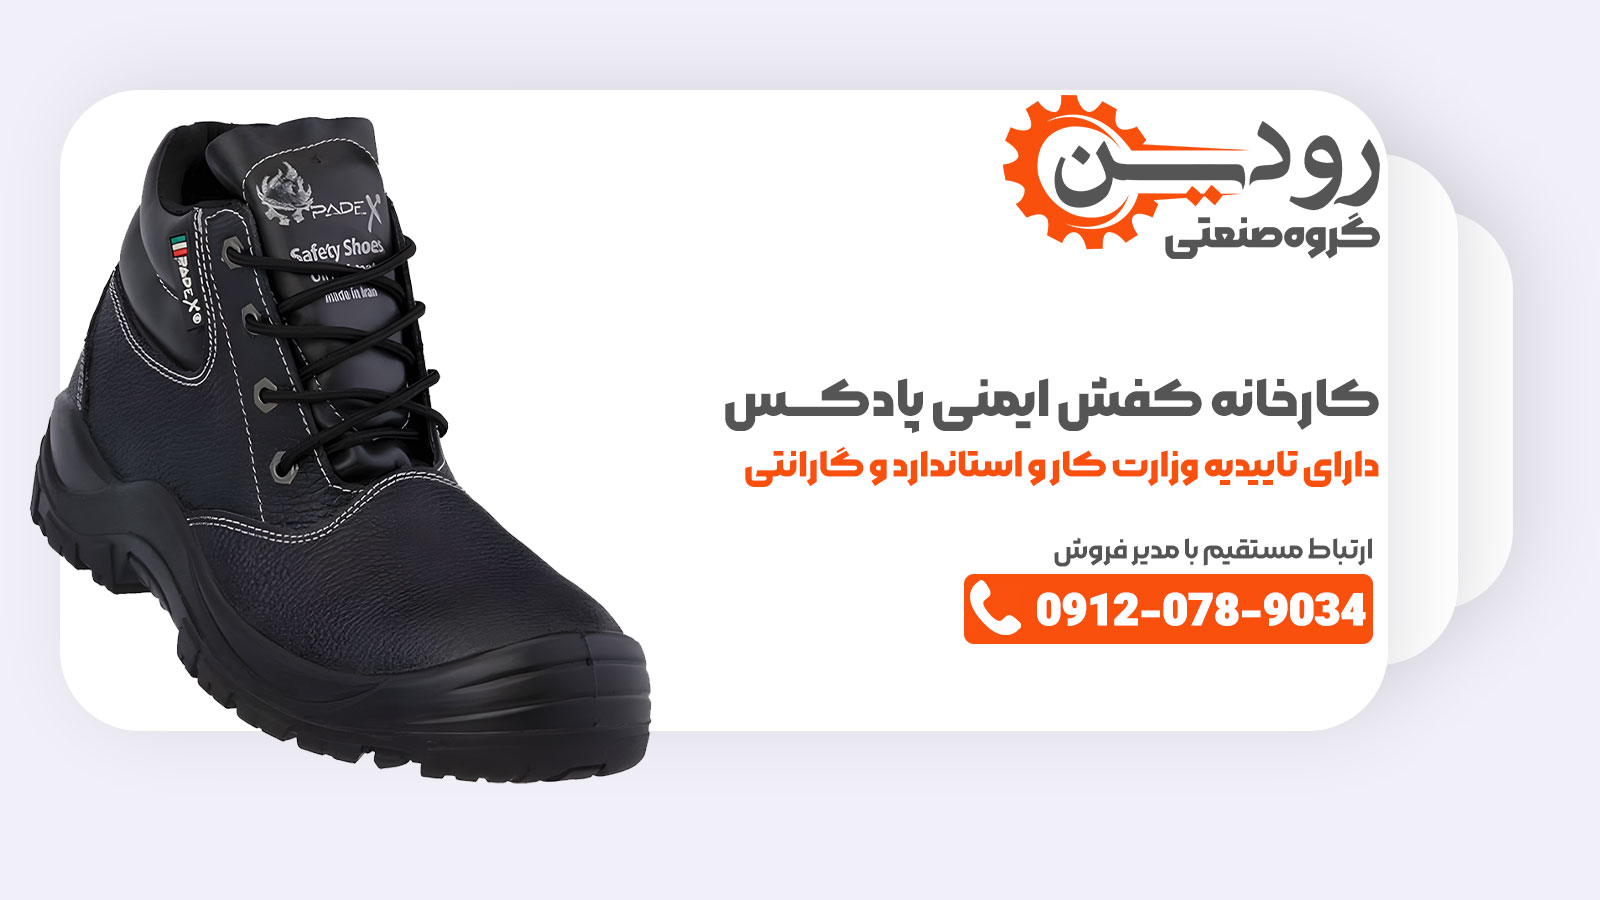 در تهران کارخانه تولید کفش ایمنی پادکس را میتوانید بیابید.